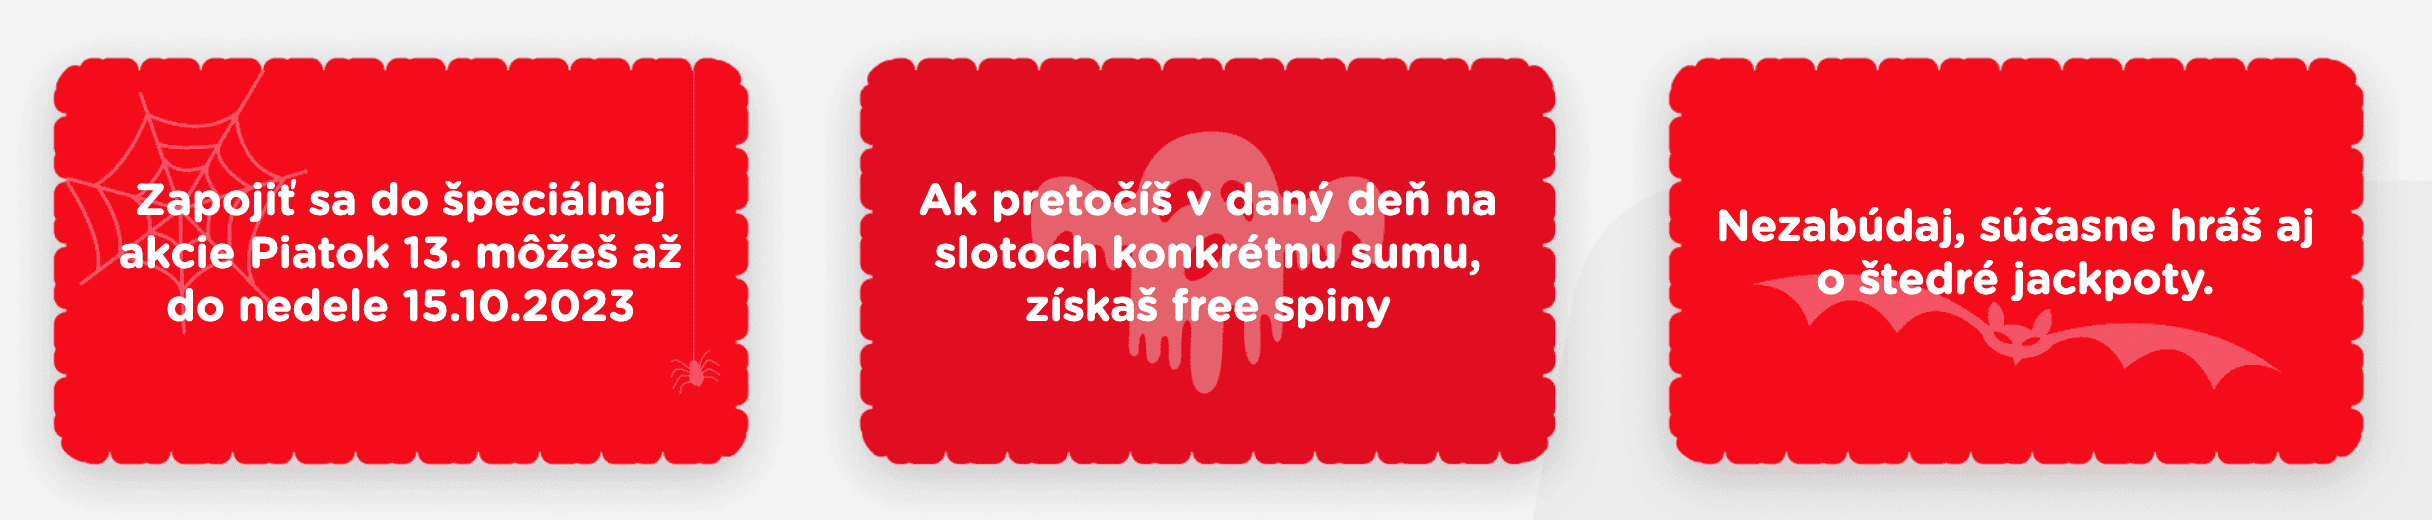 Piatok 13 v eTIPOS online kasíne - návod ako získať free spiny